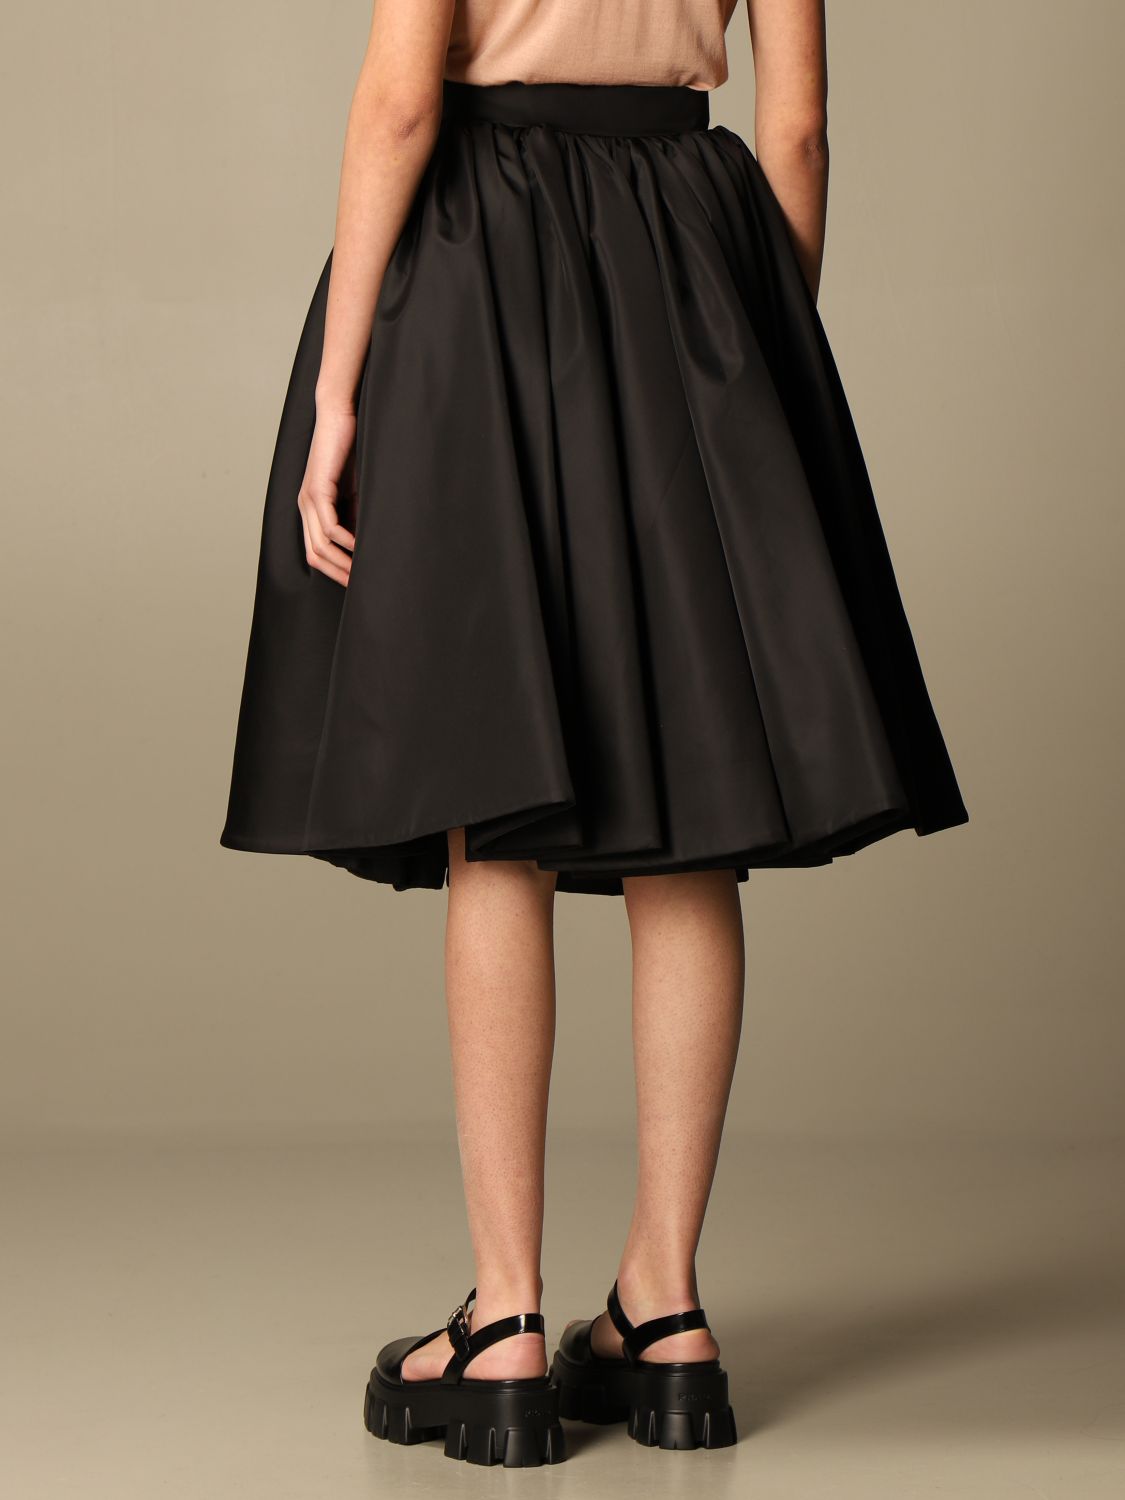 PRADA: wide skirt in re-nylon gabardine - Black | Prada skirt